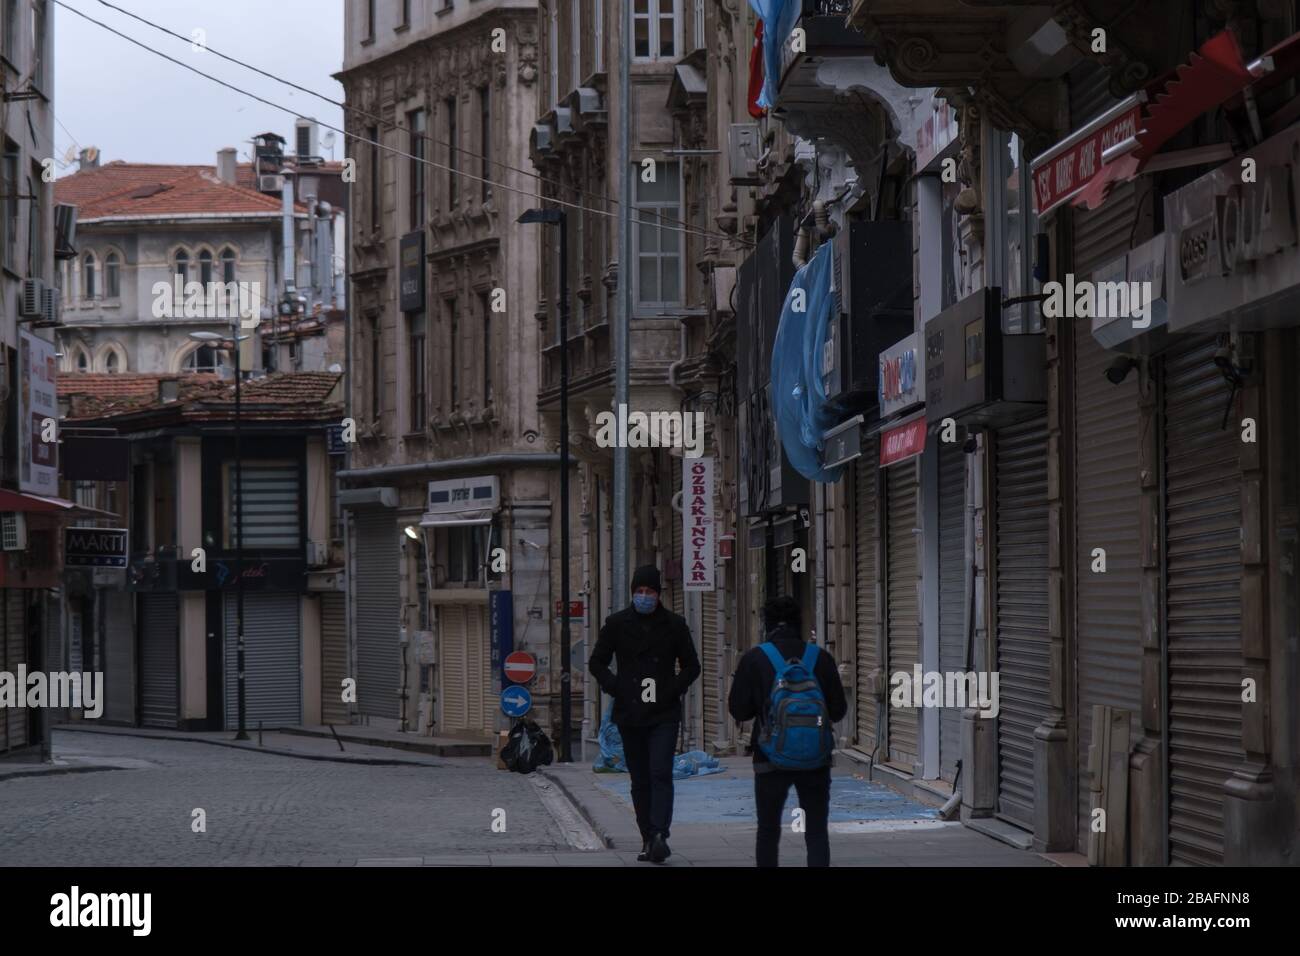 Jeune homme turc portant un masque facial pour se protéger du virus Corona (COVID-19) marchant dans les rues vides. Il semble que tous les magasins sont fermés à proximité. Banque D'Images